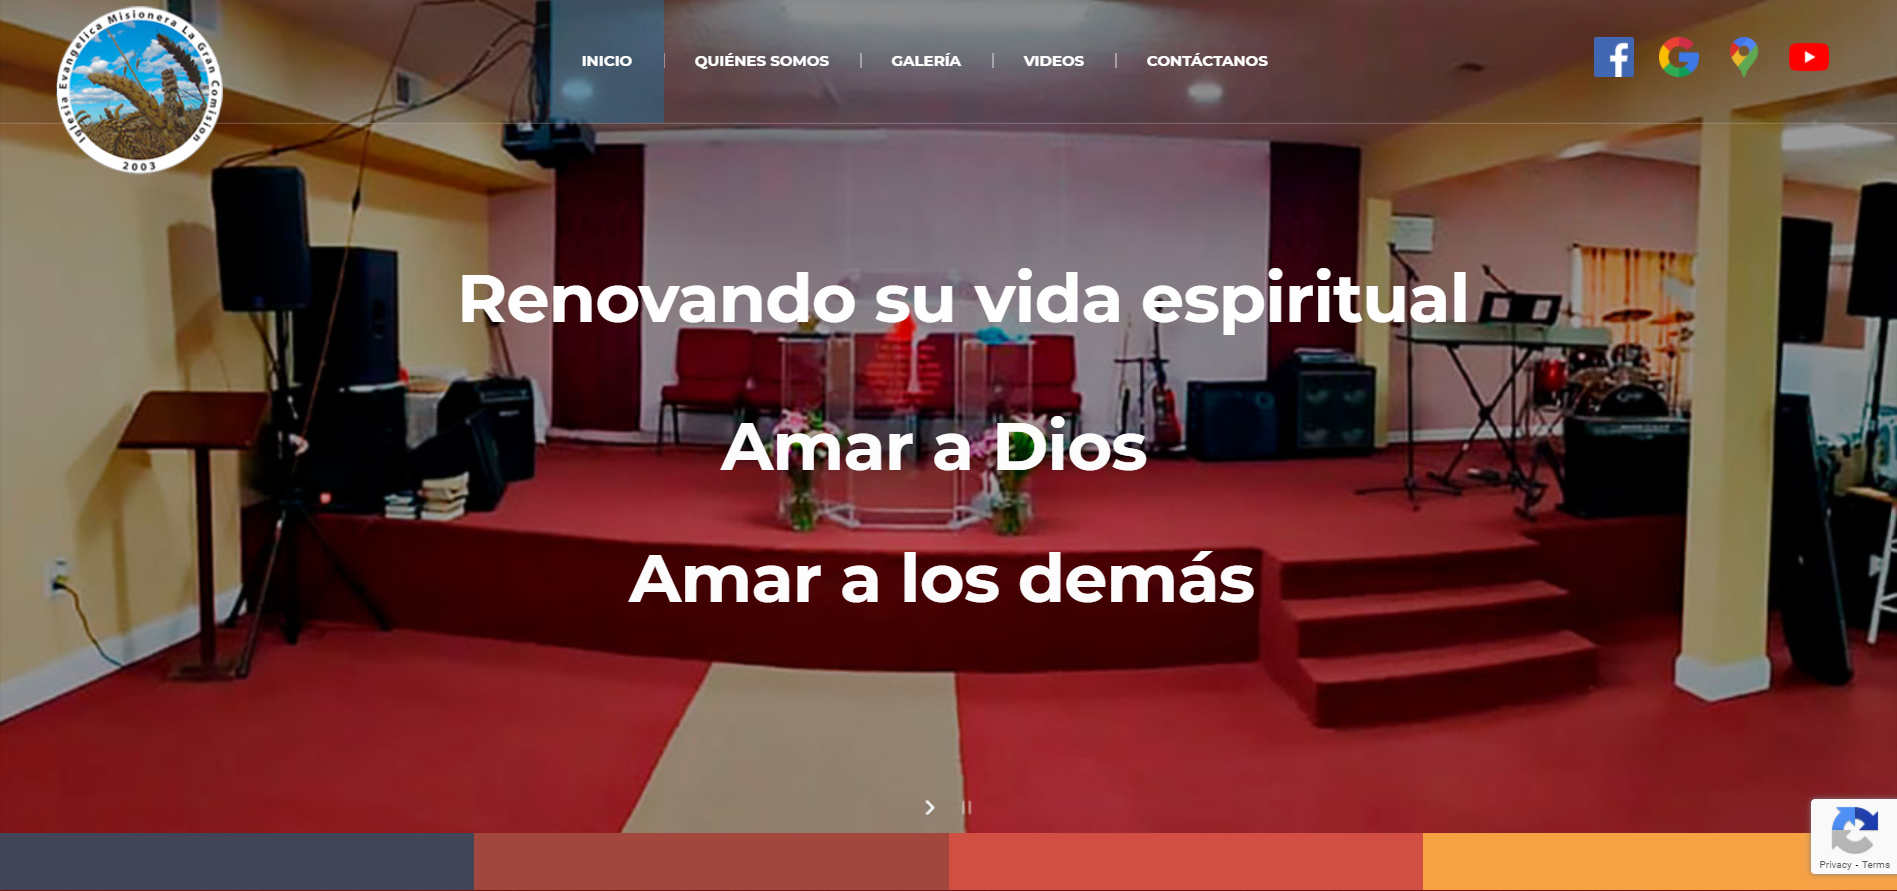 Iglesia Evangelica Misionera La Gran Comision - CyberGlobalNet Portfolio